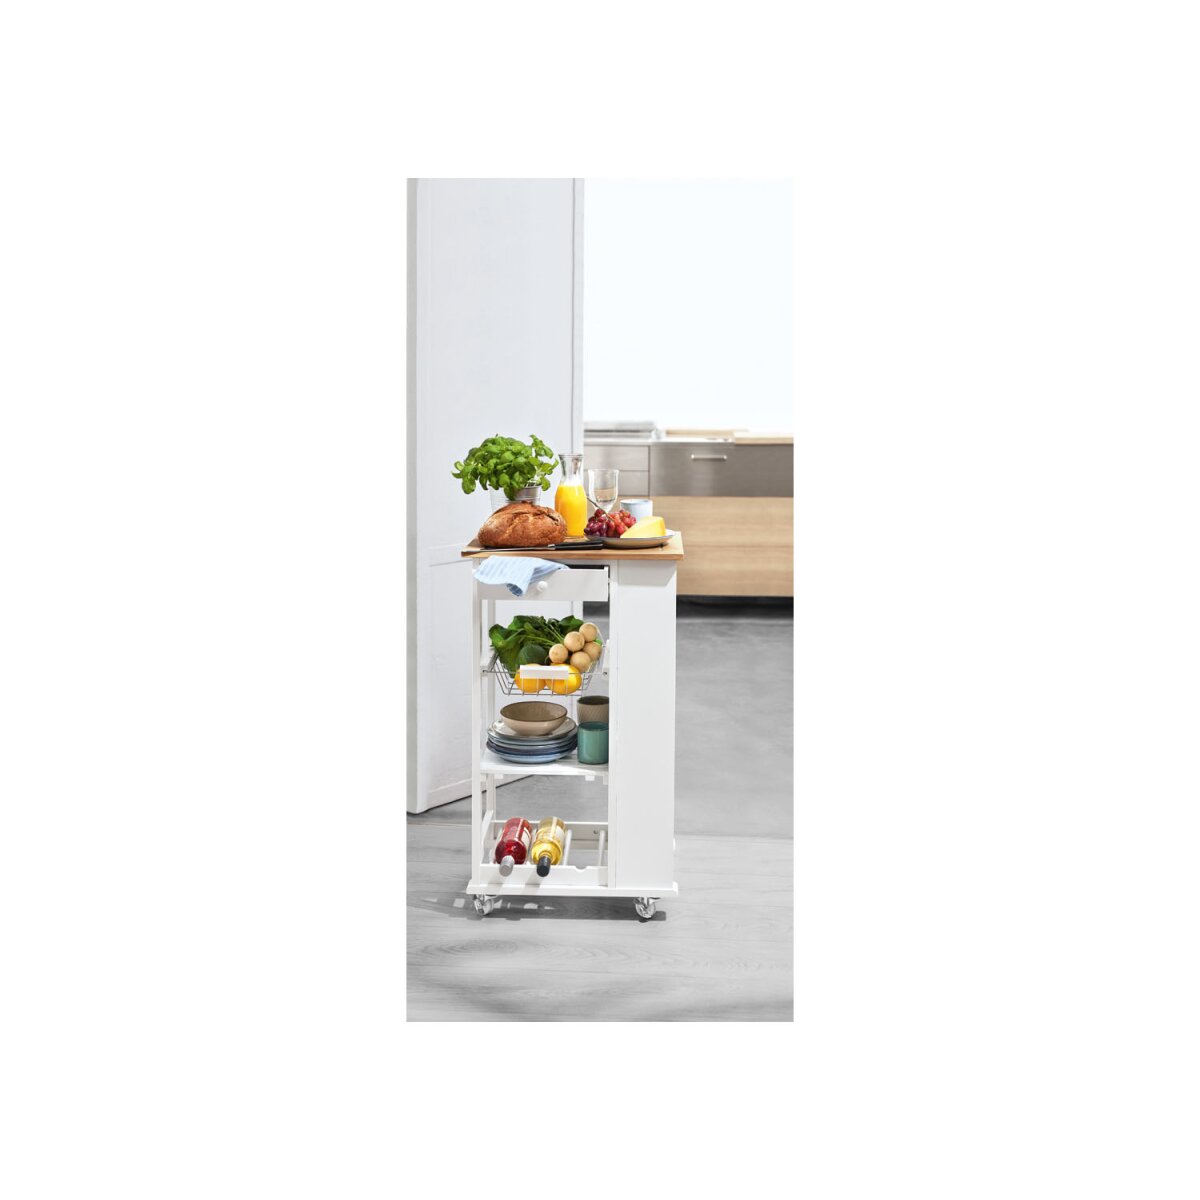 LIVARNO home Küchentrolley mit Bambusholz, weiß/braun - B-Ware sehr gut,  39,99 € | Haarpflege & Haarstyling